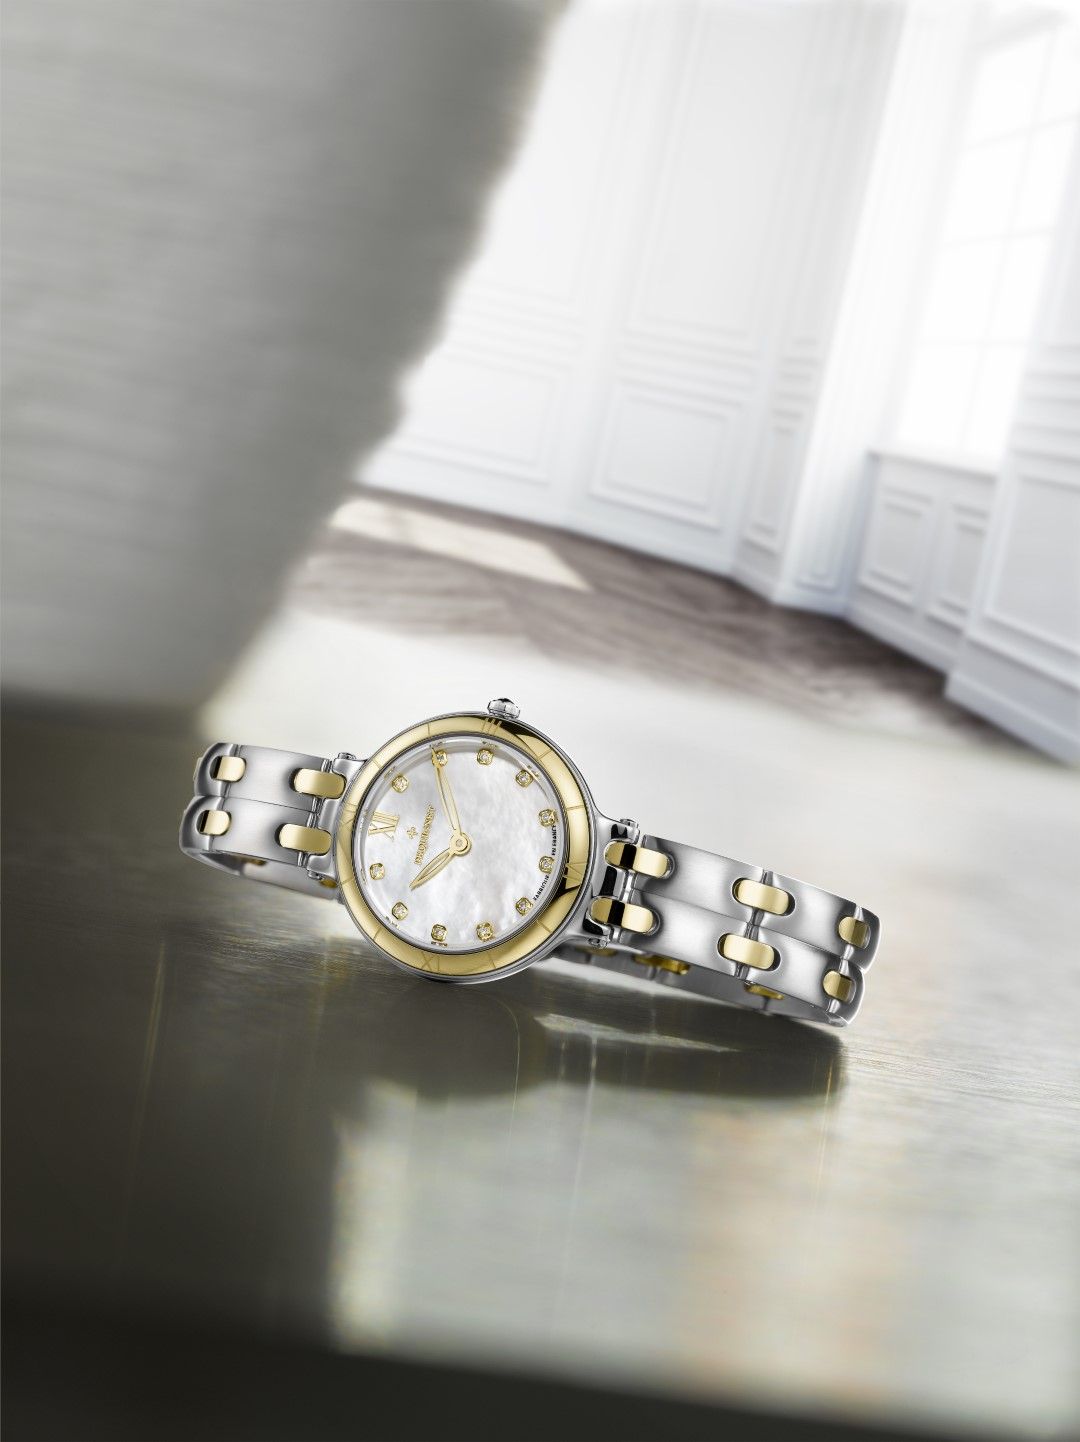 Montre Moorea, montre Pequignet entreprise horlogère française